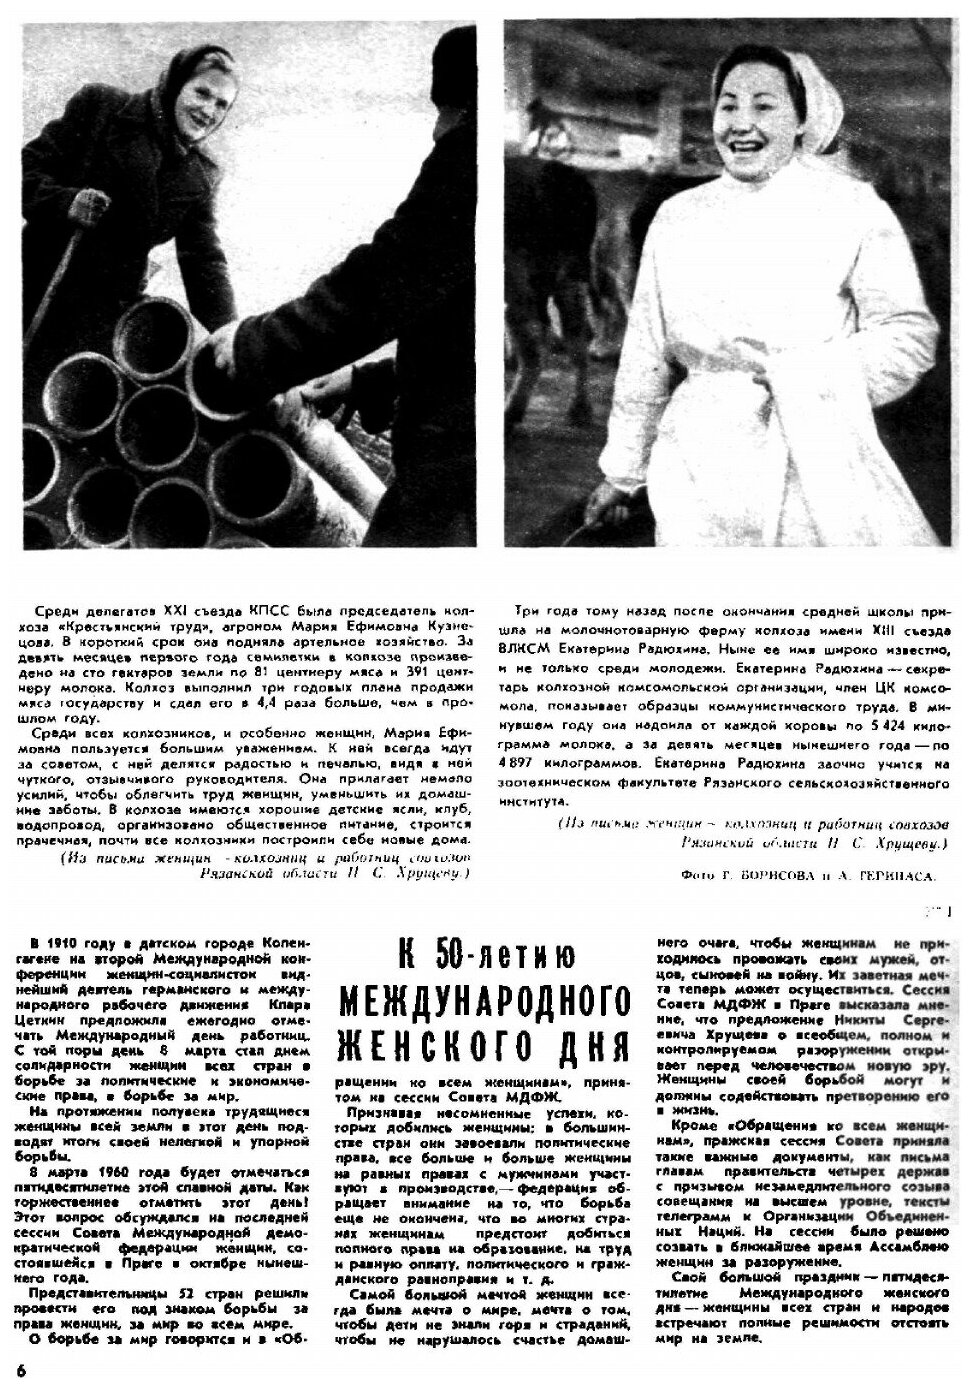 Журнал "Крестьянка". №12, Декабрь 1959 - фото №6